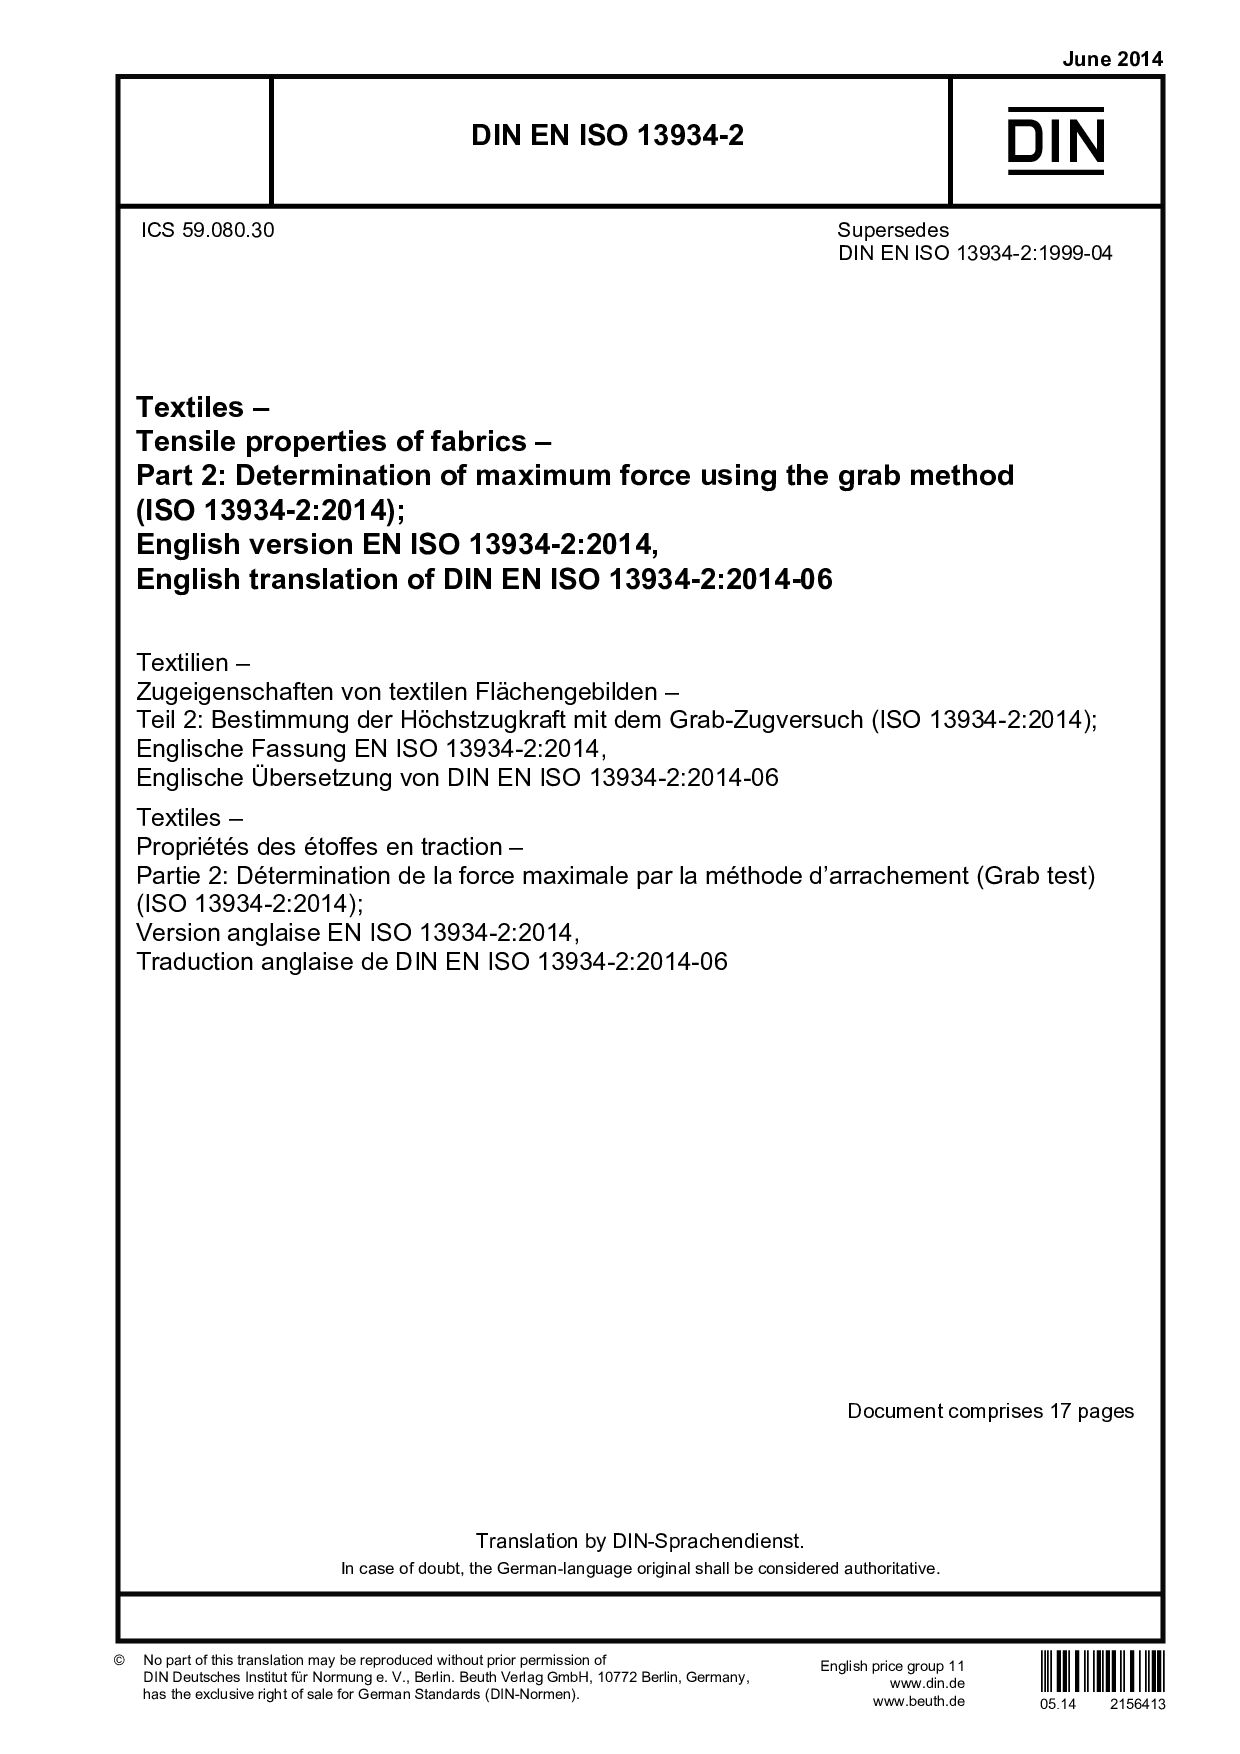 DIN EN ISO 13934-2:2014-06